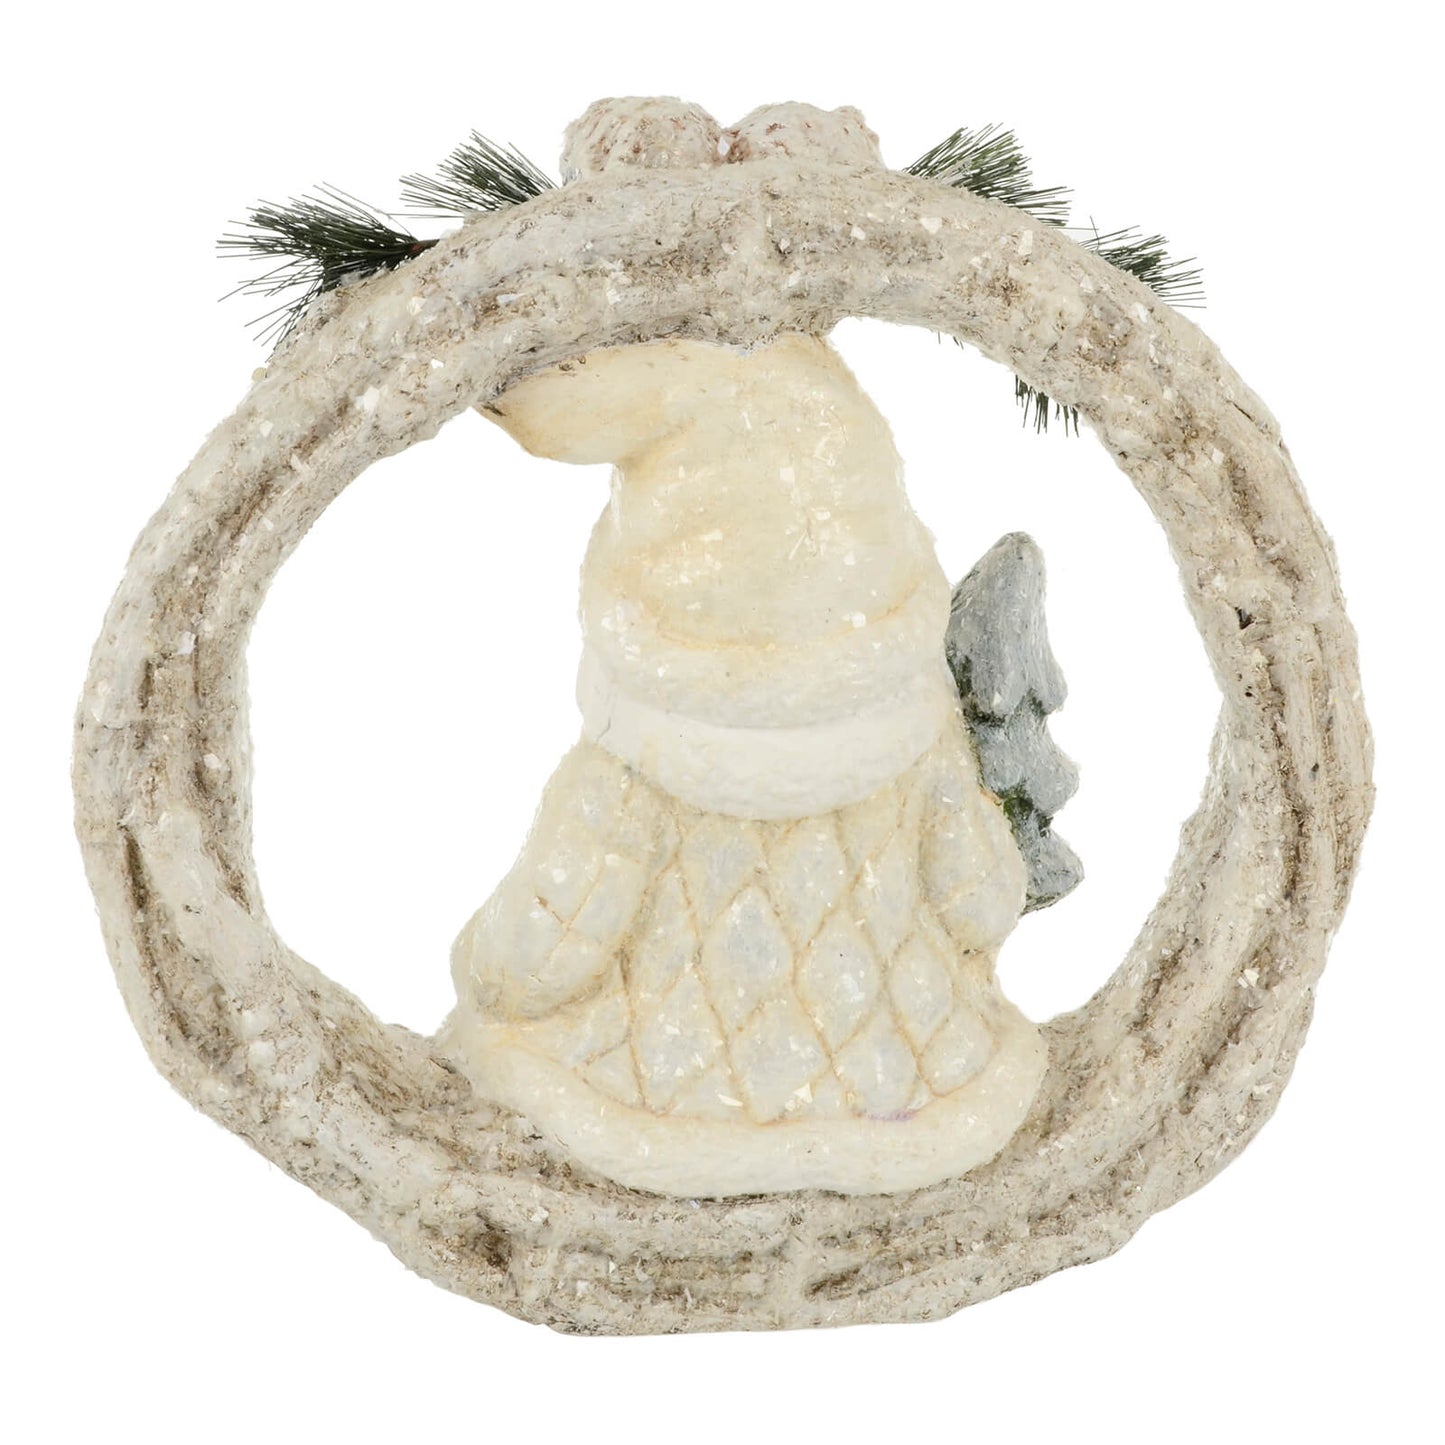 Mr Crimbo Light Up Christmas Figure Wreath Decoration Ceramic 40cm - MrCrimbo.co.uk -XS7144 - Santa -